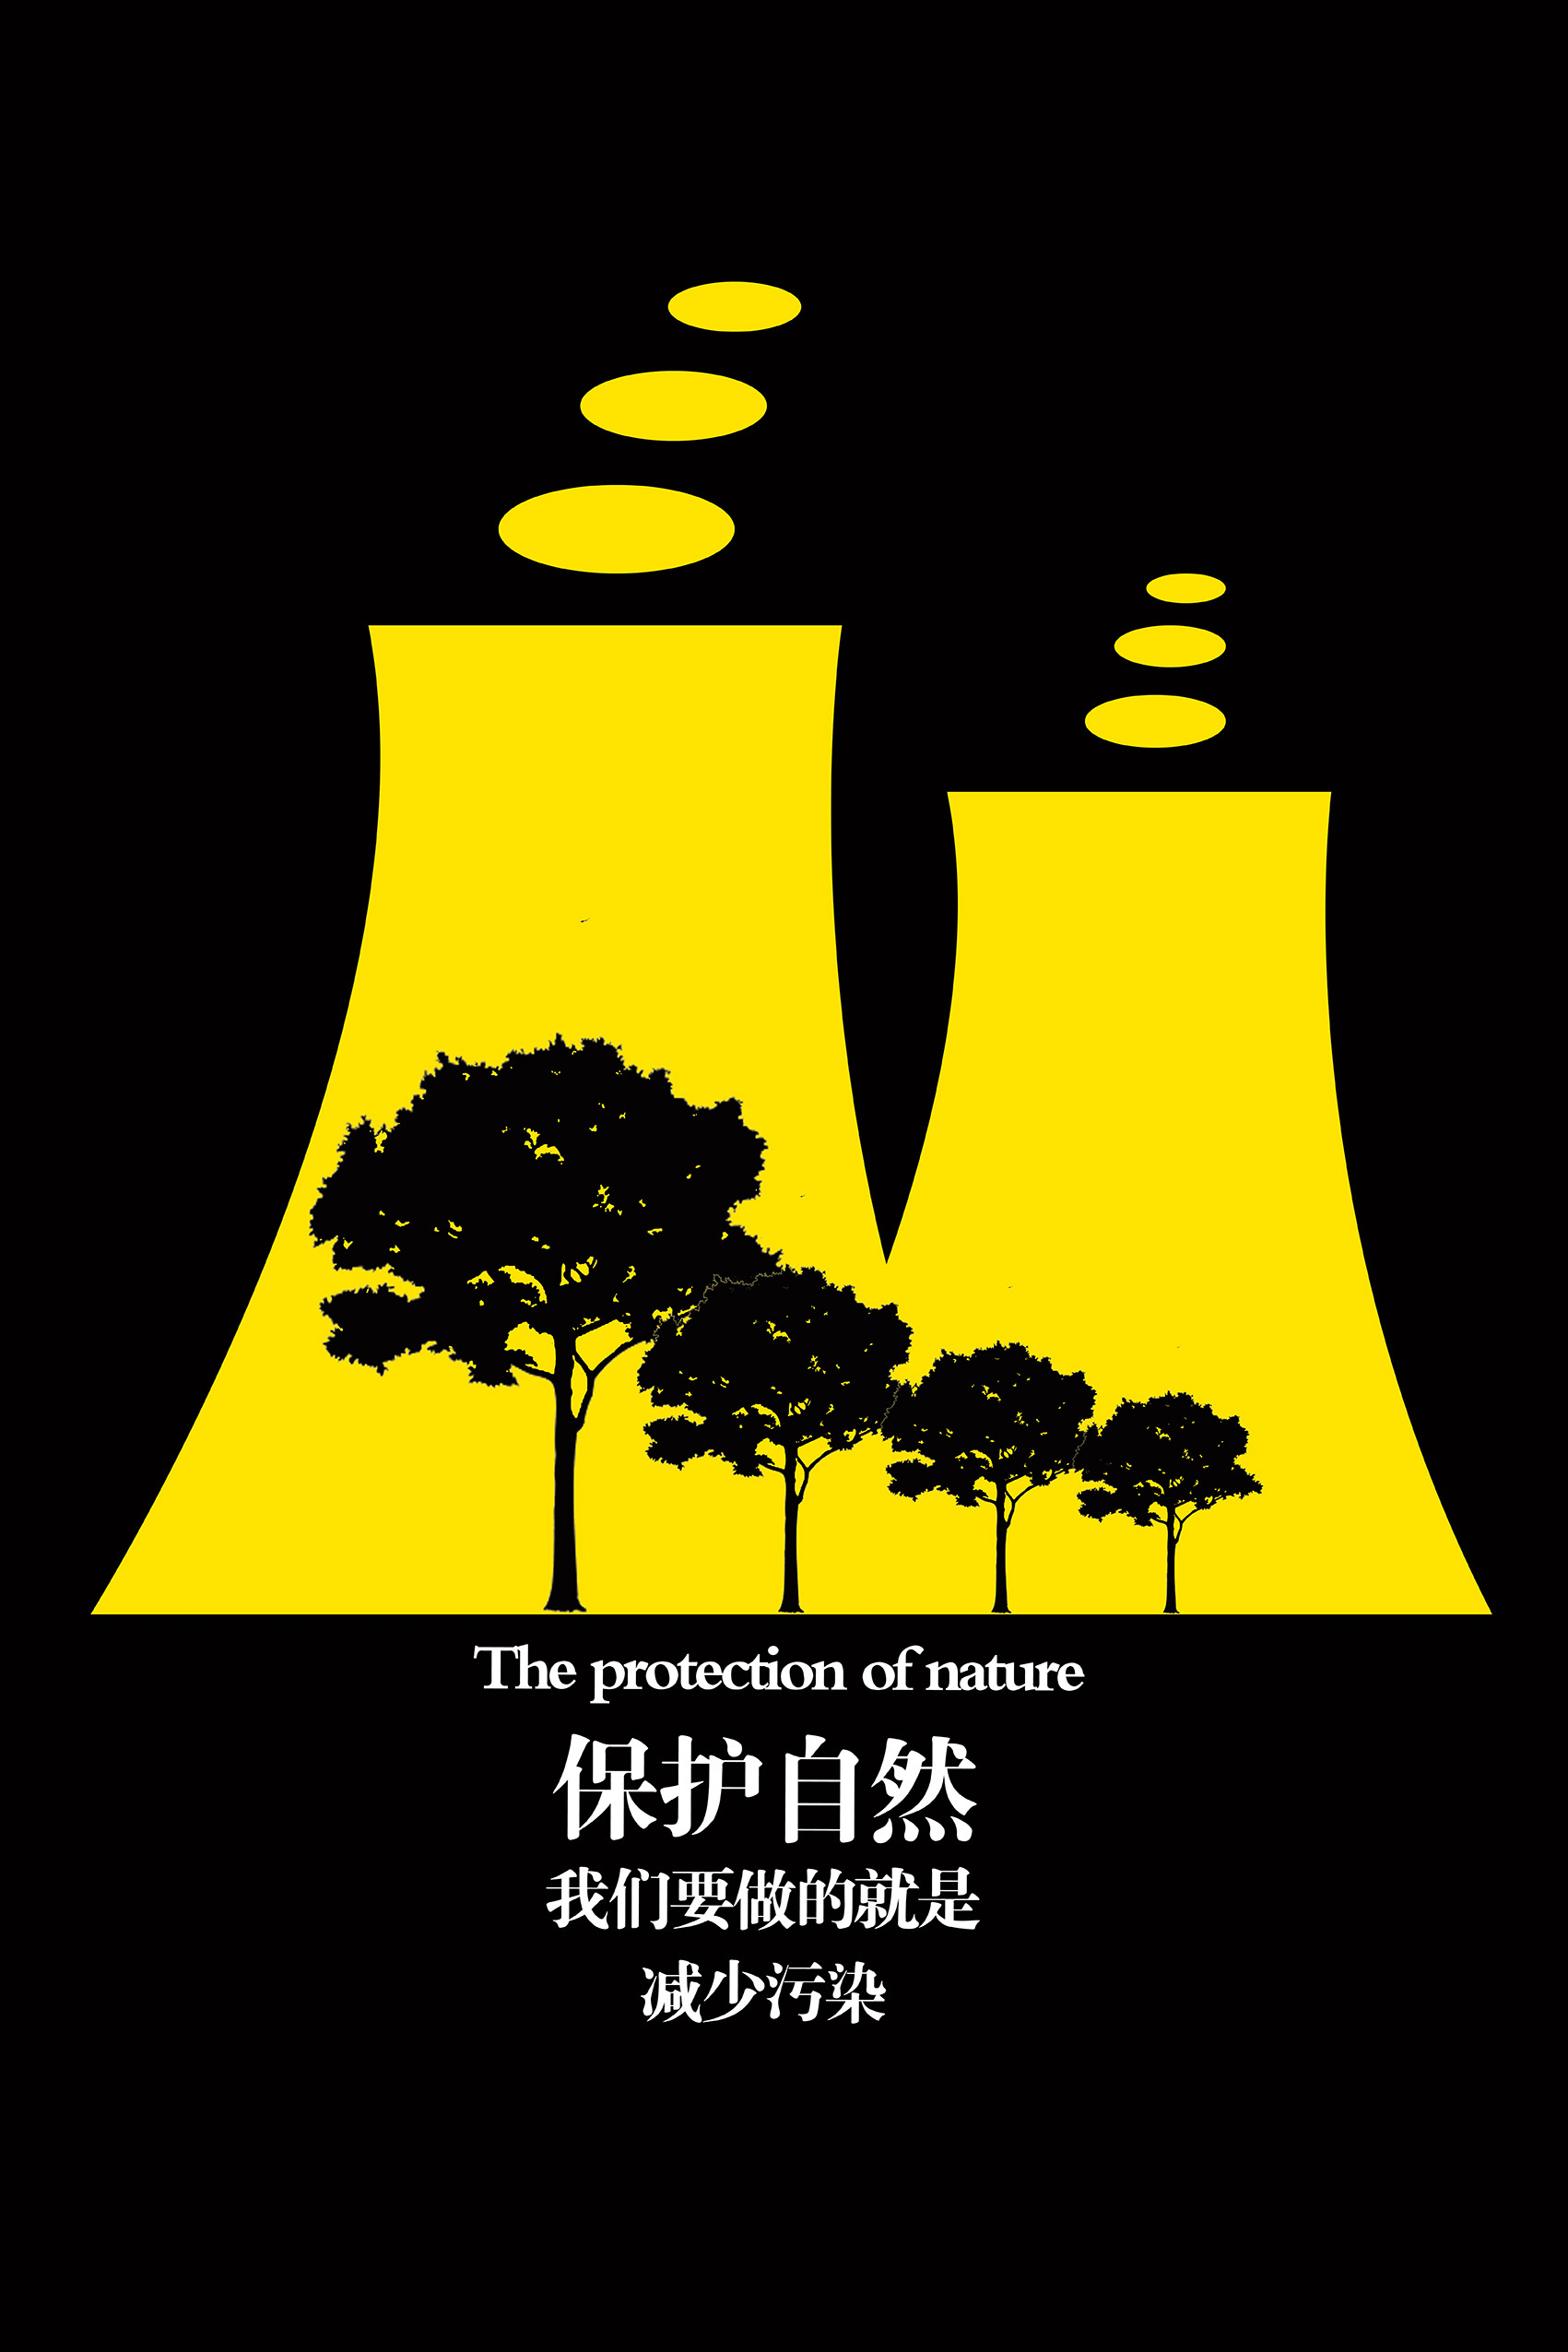 图形创意环保系列海报